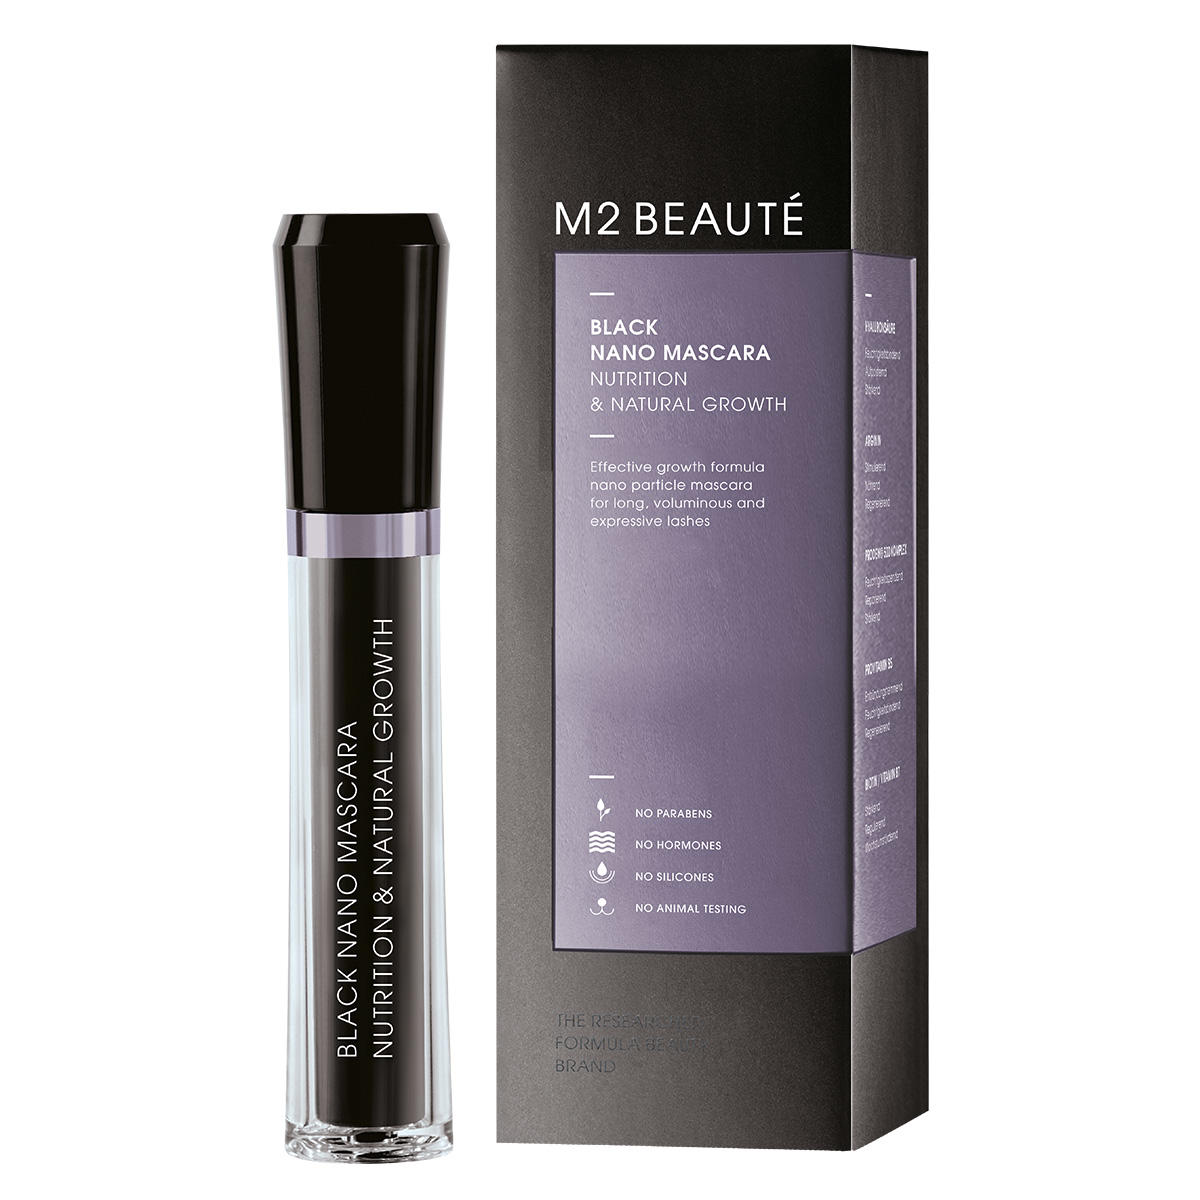 M2 Beauté Black Nano Mascara Nutrition & Natural Growth 6 ml - 1